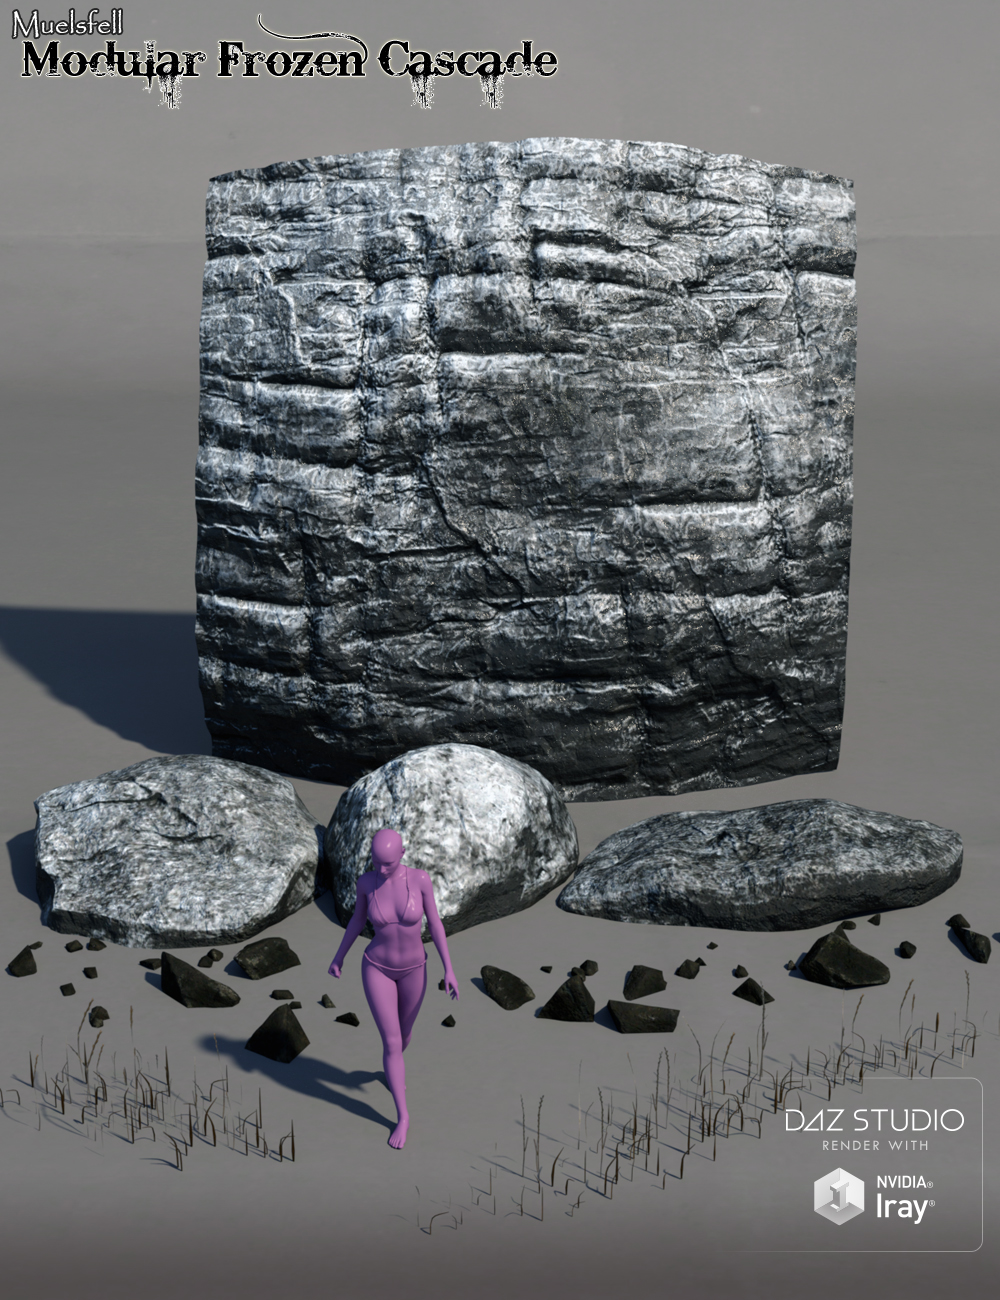 Muelsfell Modular Frozen Cascade by: E-Arkham, 3D Models by Daz 3D